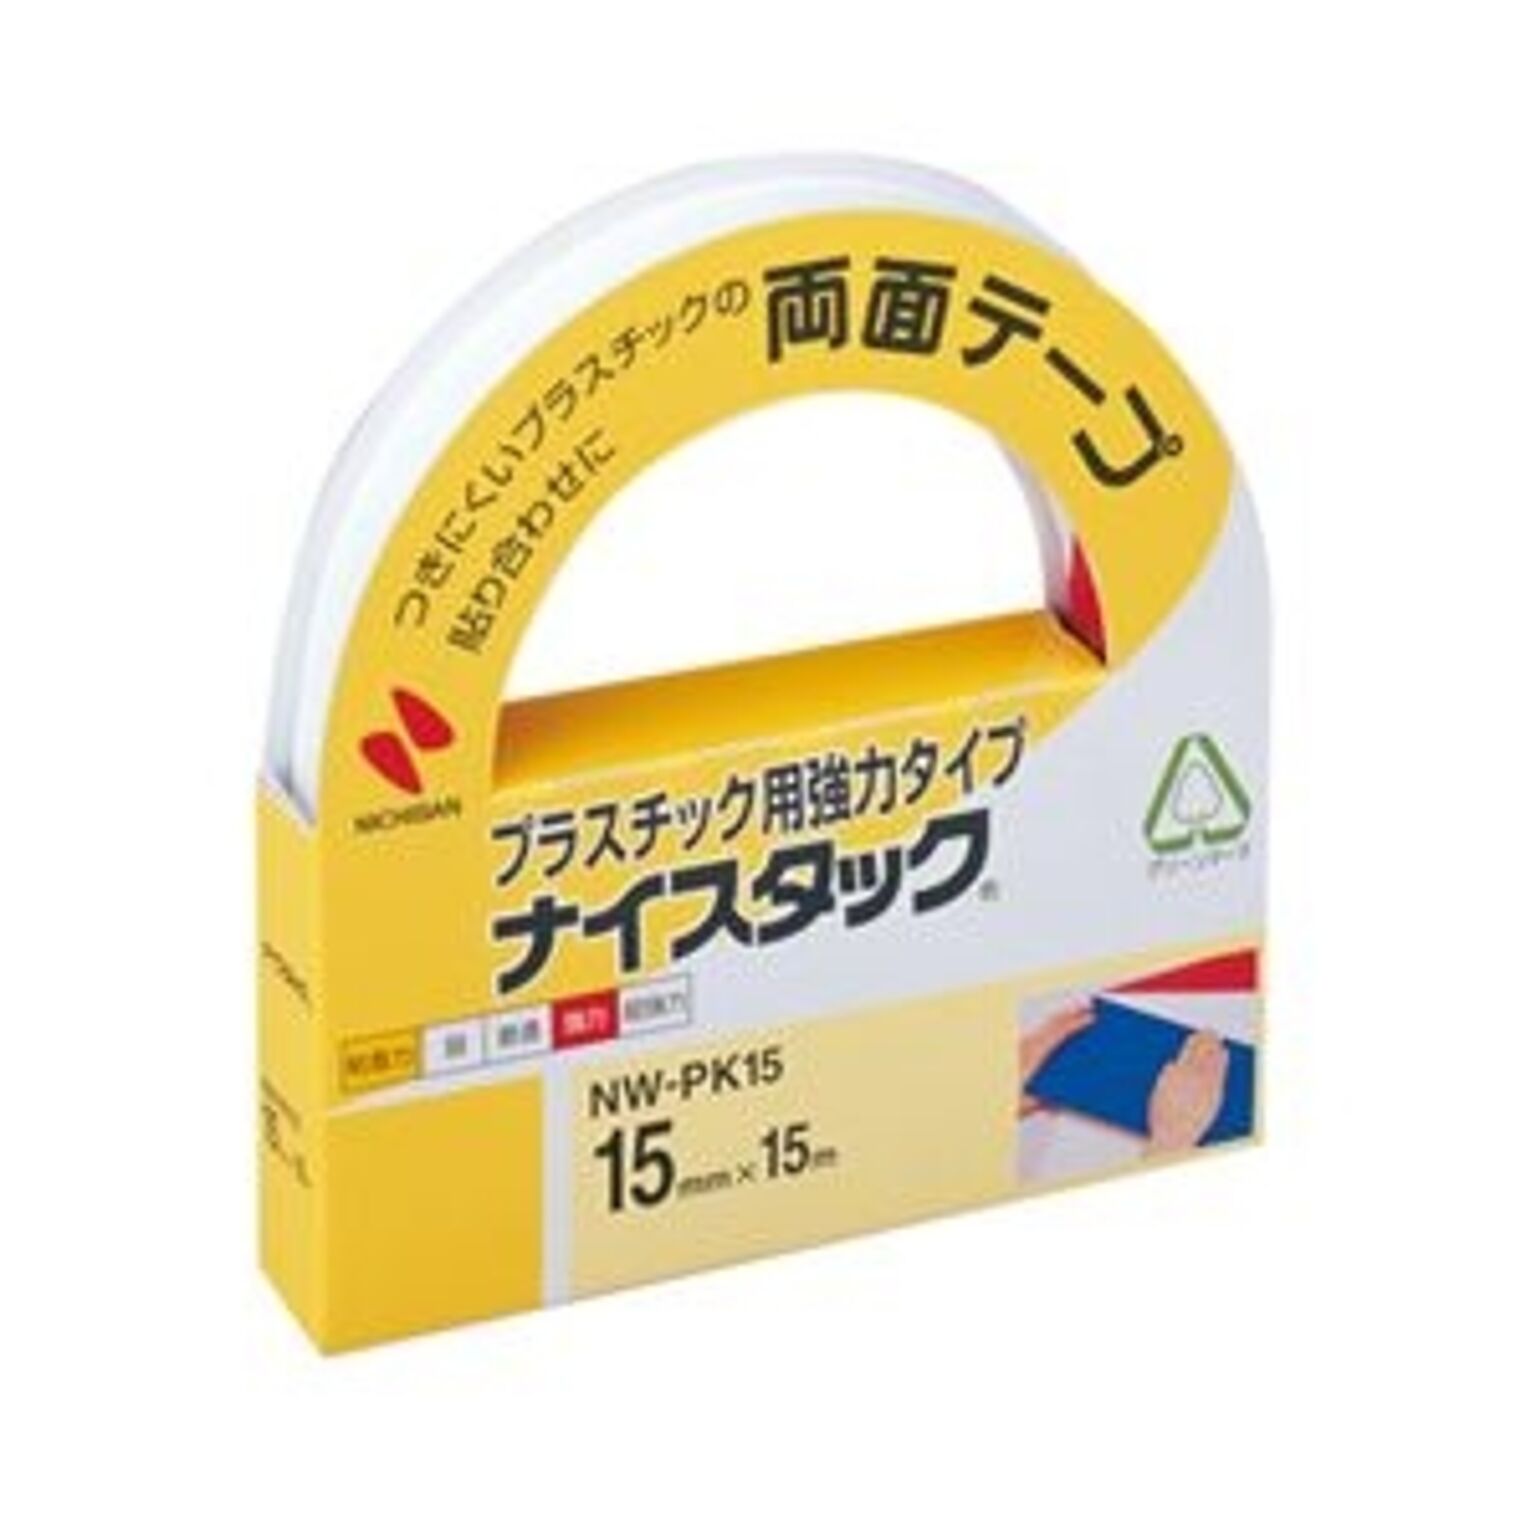 (まとめ) ニチバン ナイスタック 両面テープ 強力タイプ プラスチック用 大巻 15mm×15m NW-PK15 1巻 【×10セット】